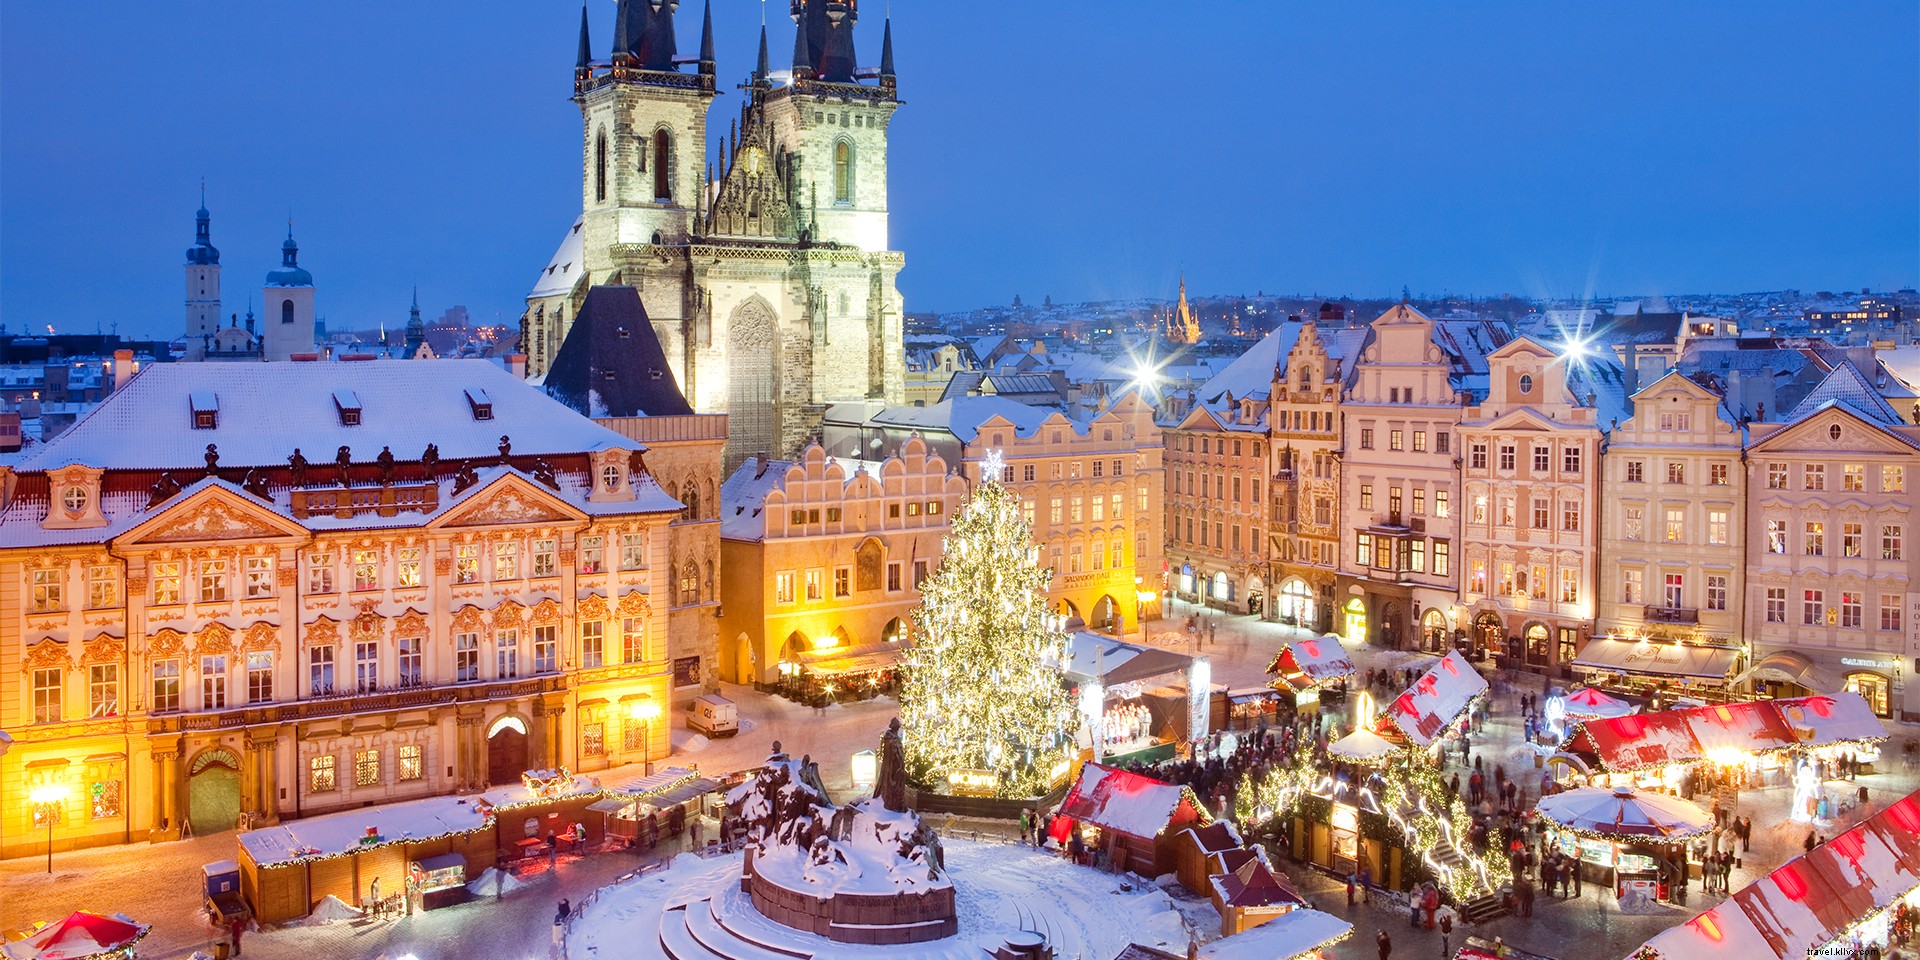 Les 6 meilleurs marchés de Noël d Europe 